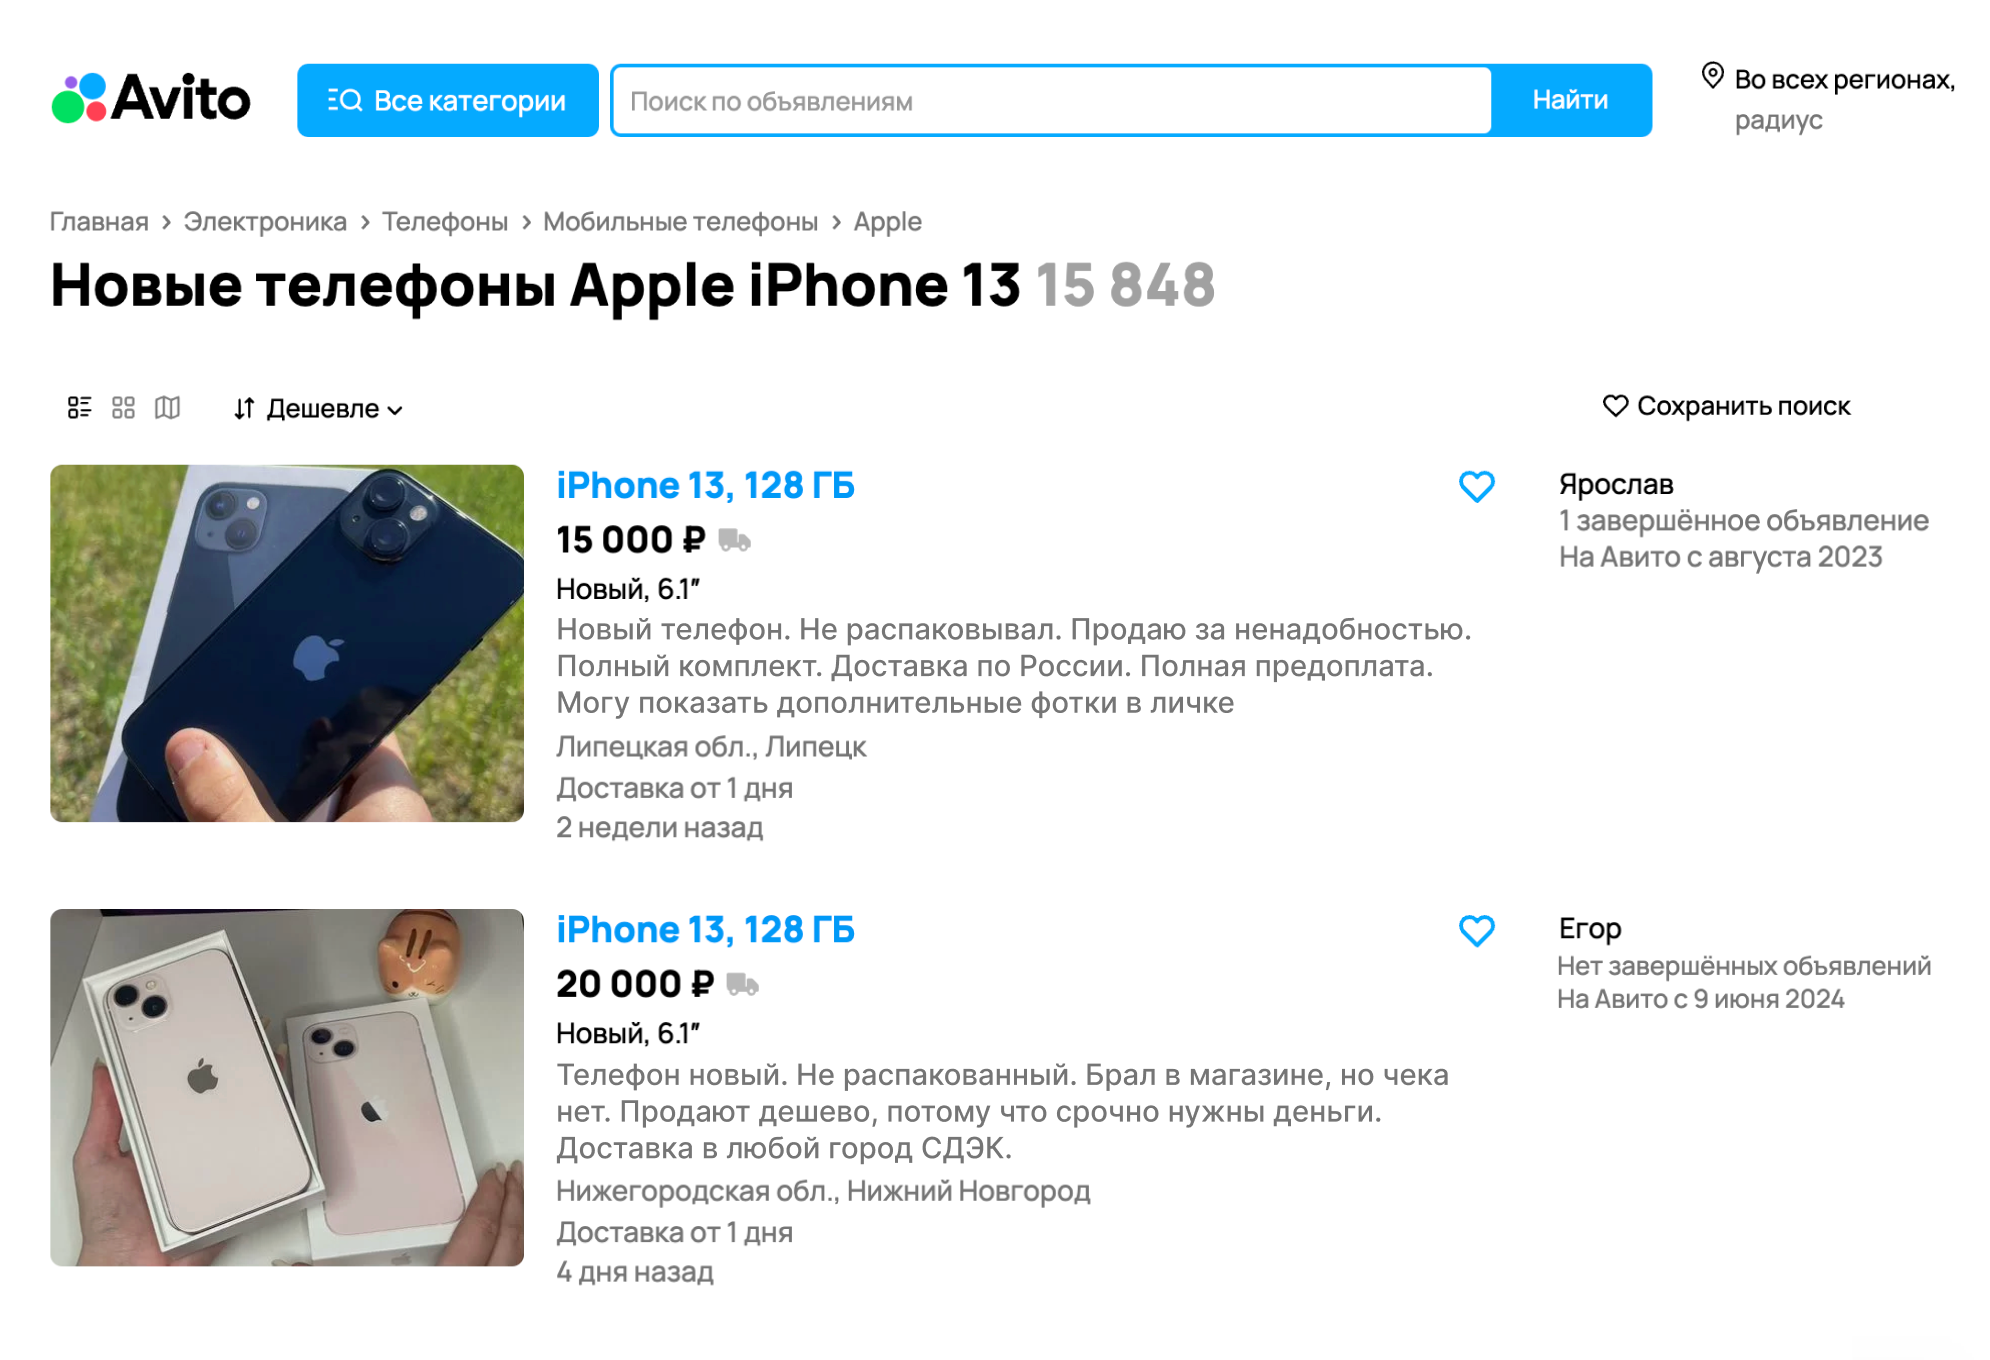 Новый iPhone 13 продают по цене недорогого смартфона. Скорее всего, с объявлением что⁠-⁠то не так